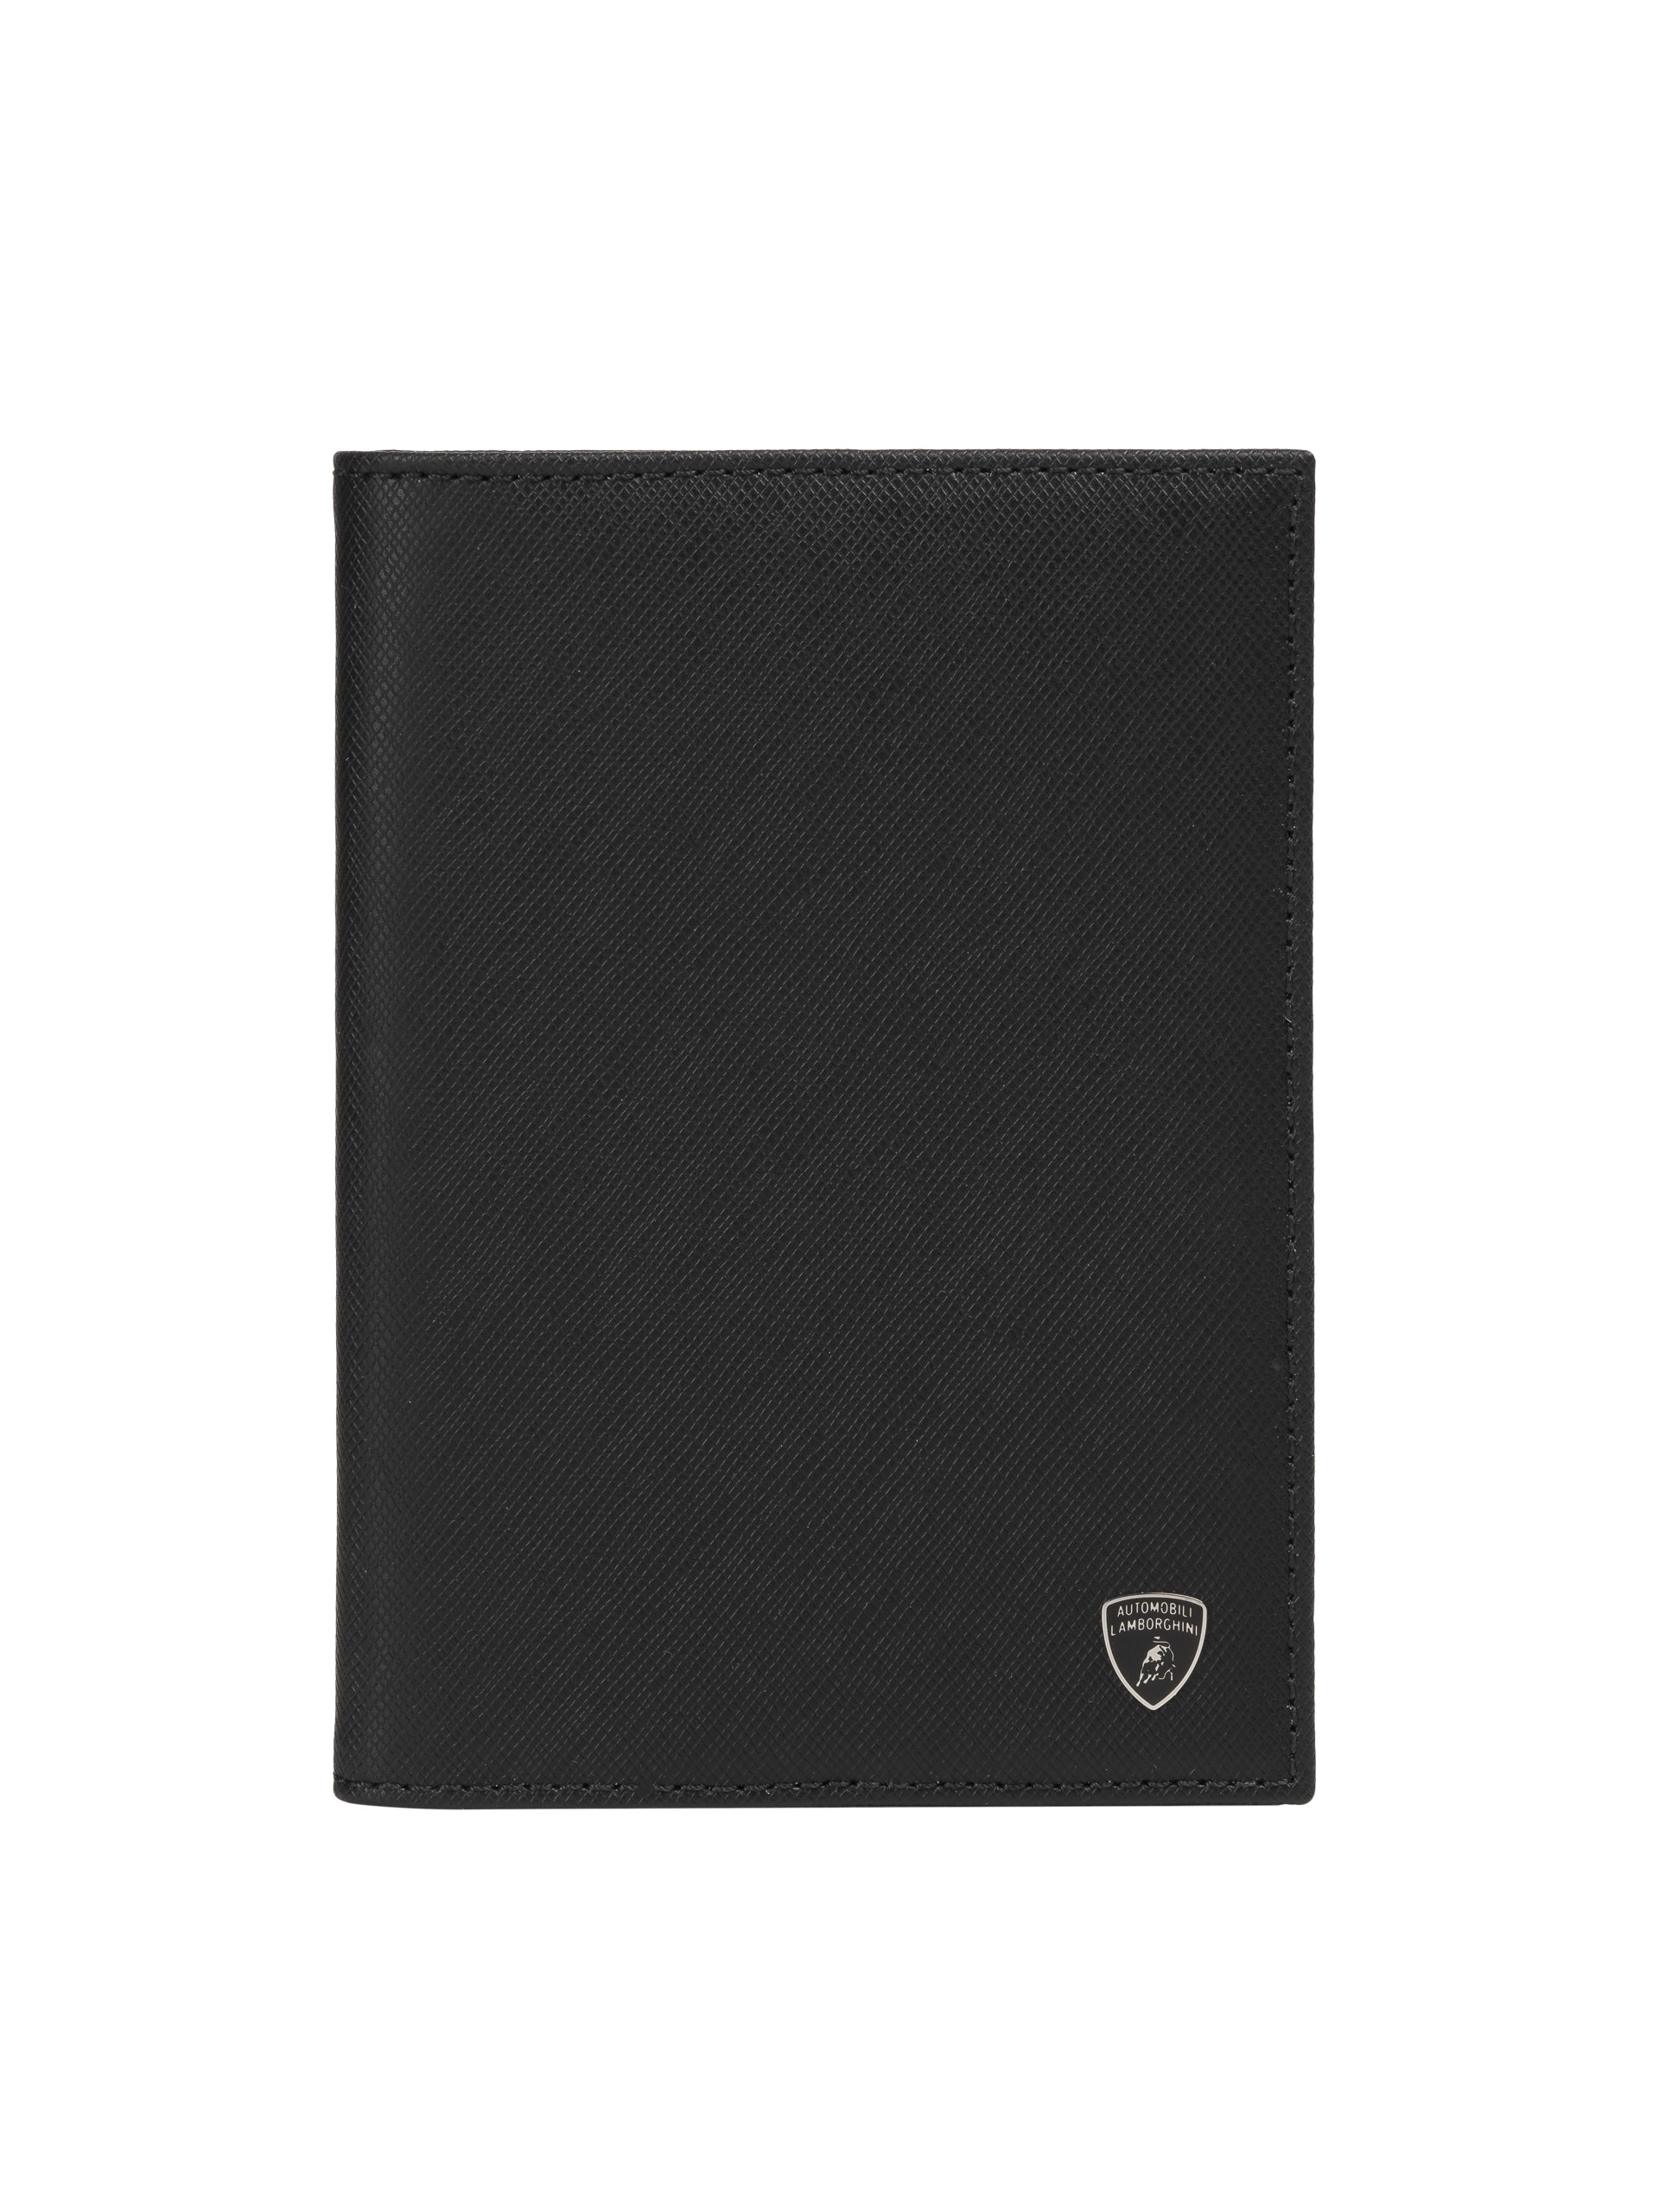 Leather passport cover | Lamborghini Store